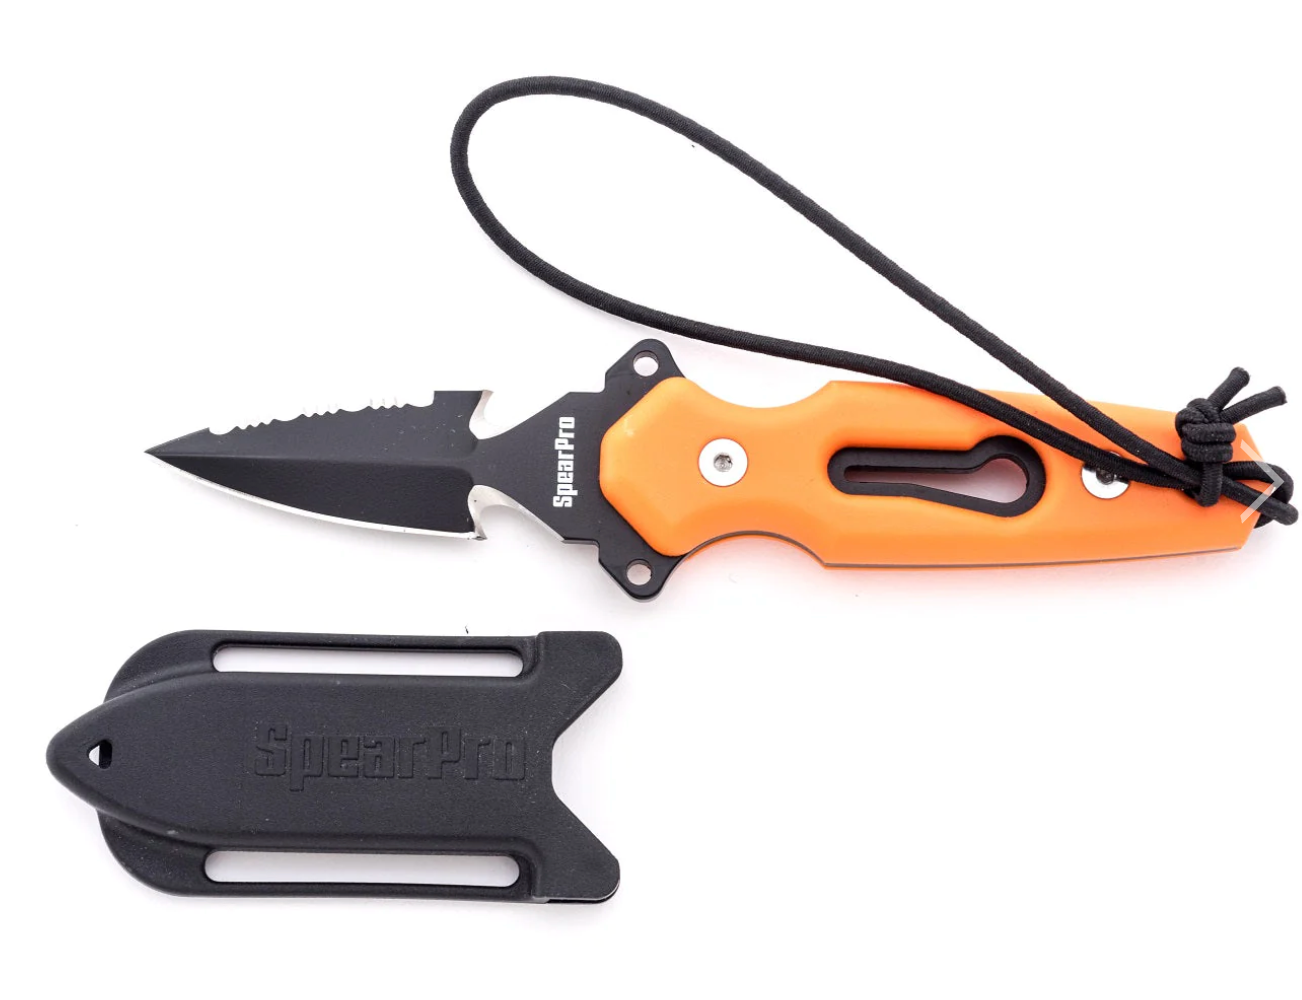 SPEARPRO RANGER MINI DAGGER 3.0" STAINLESS STEEL DIVE KNIFE TEFLON COATED